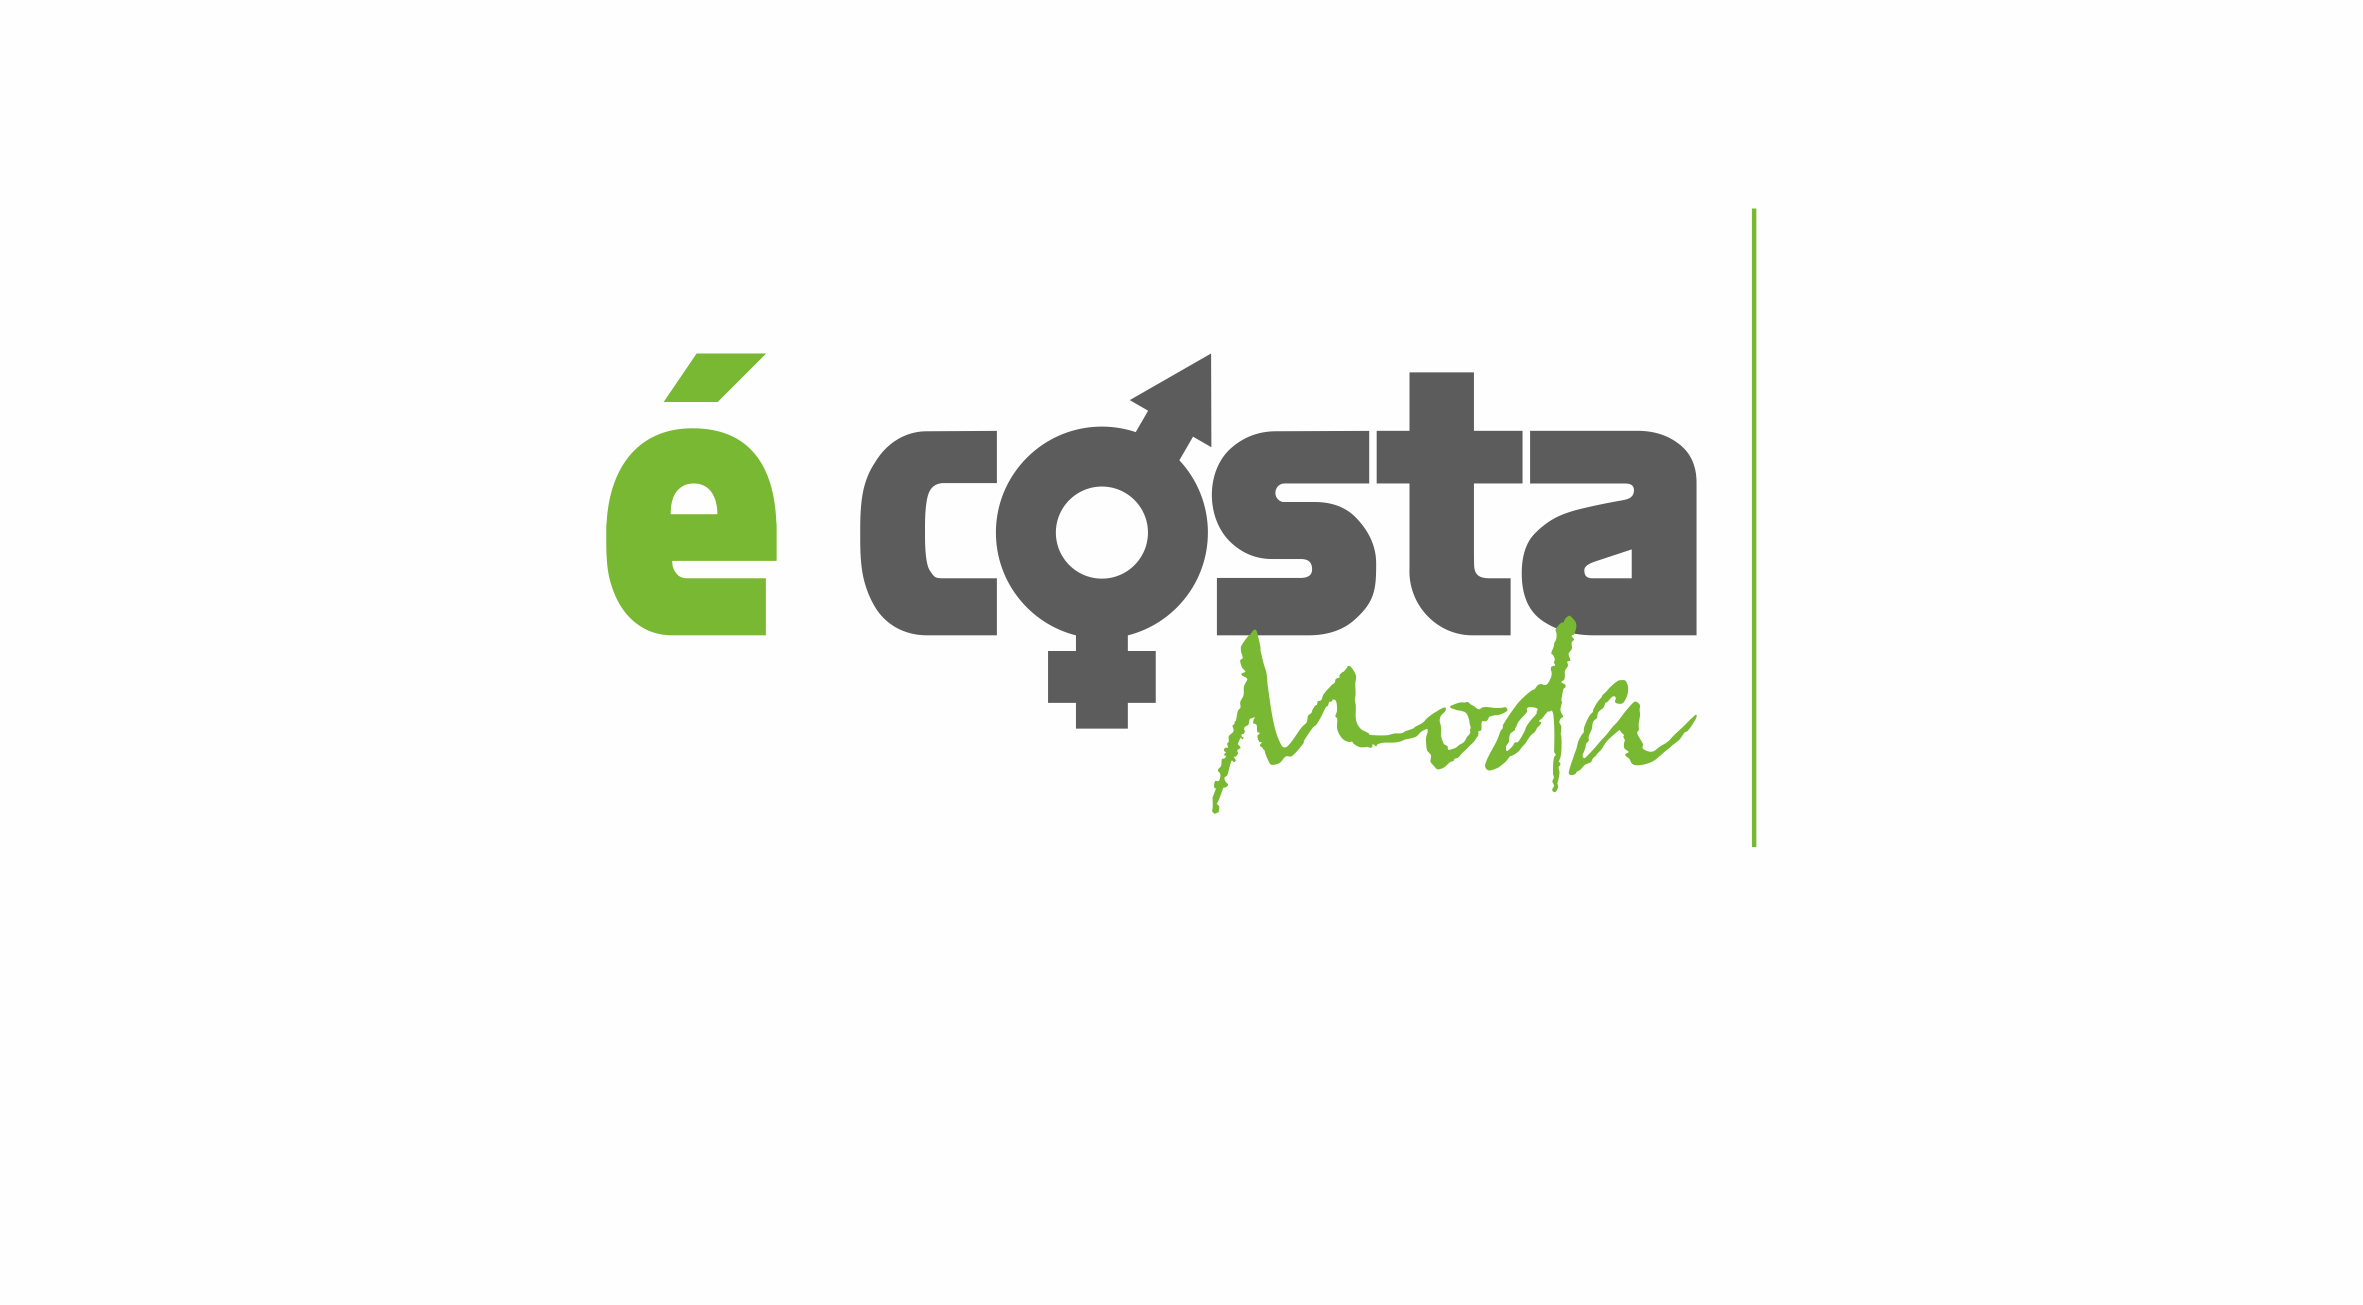 E-Costa